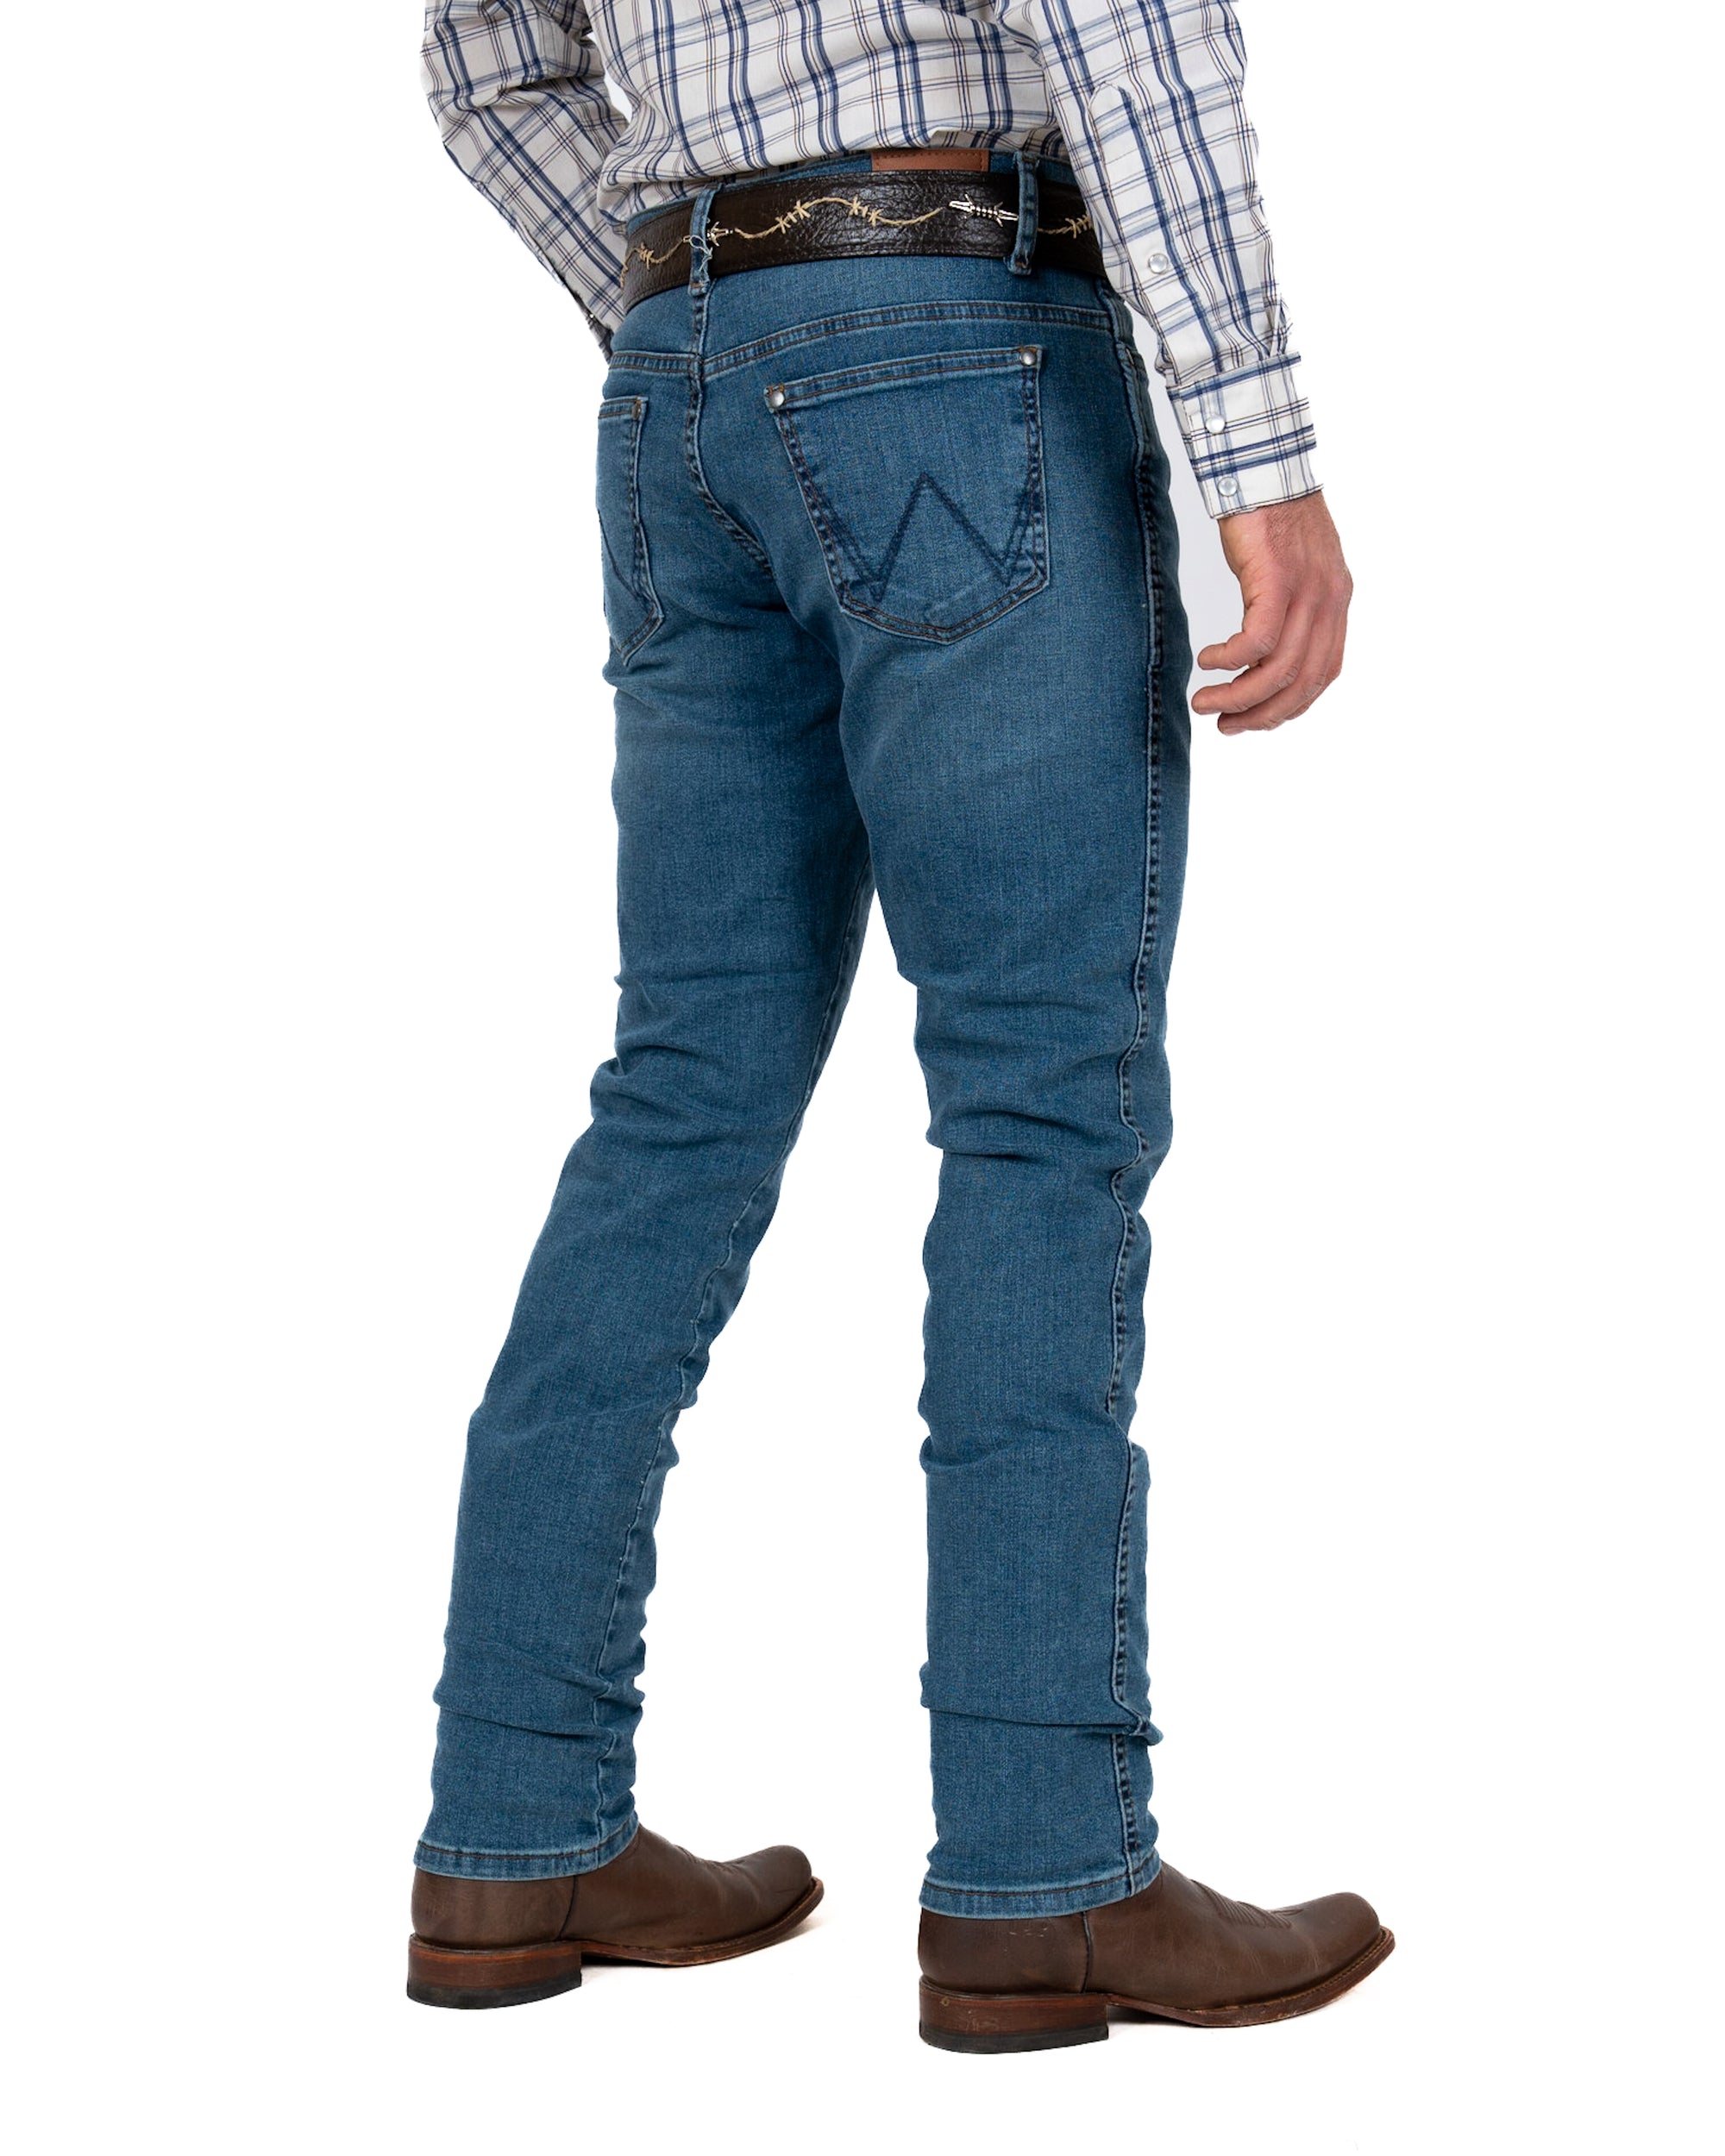 Jeans Wrangler Slim Caballero